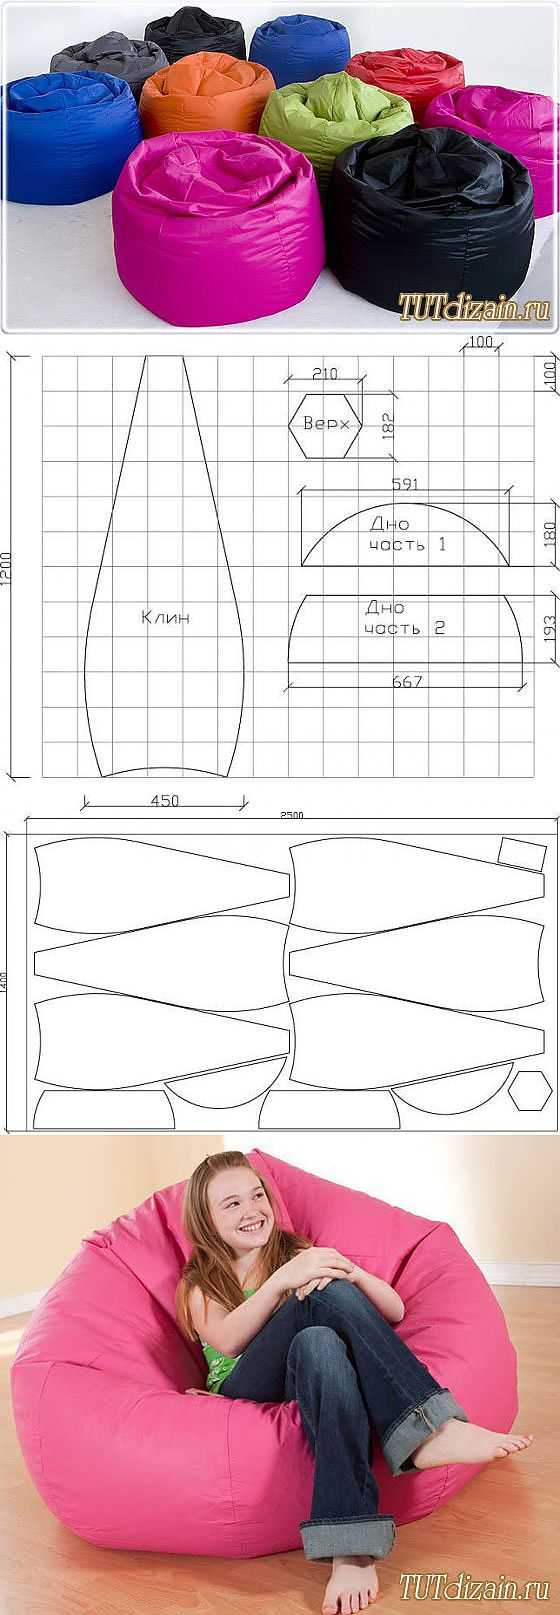 Как создать бескаркасную мебель своими руками – пошаговое изготовление и подробные инструкции по проектированию (130 фото)